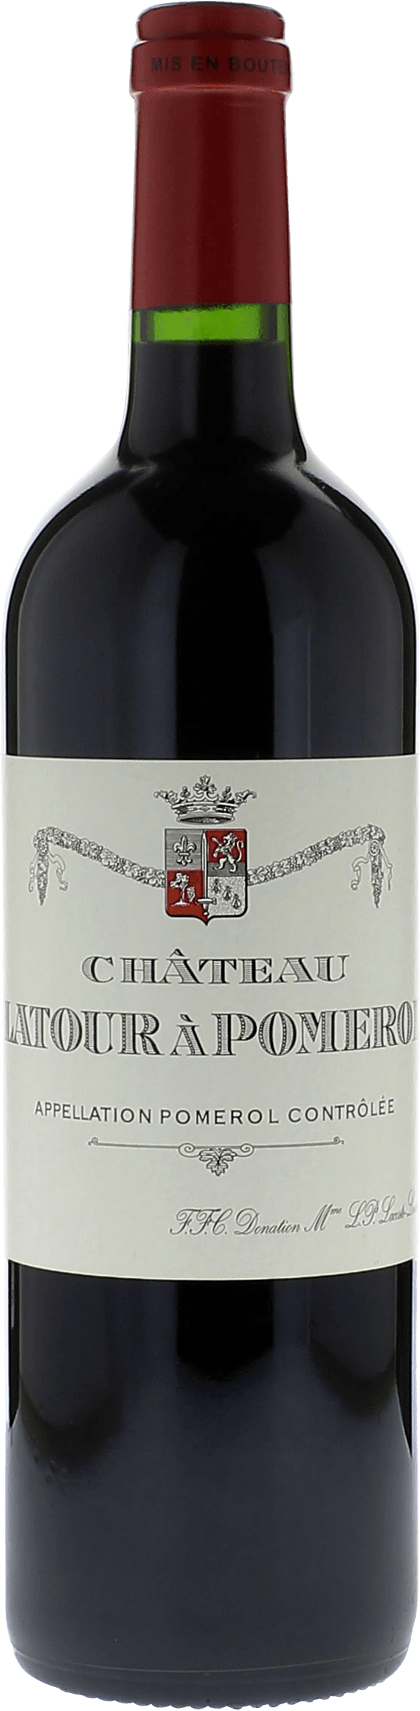 Latour  pomerol 1994  Pomerol, Bordeaux rouge